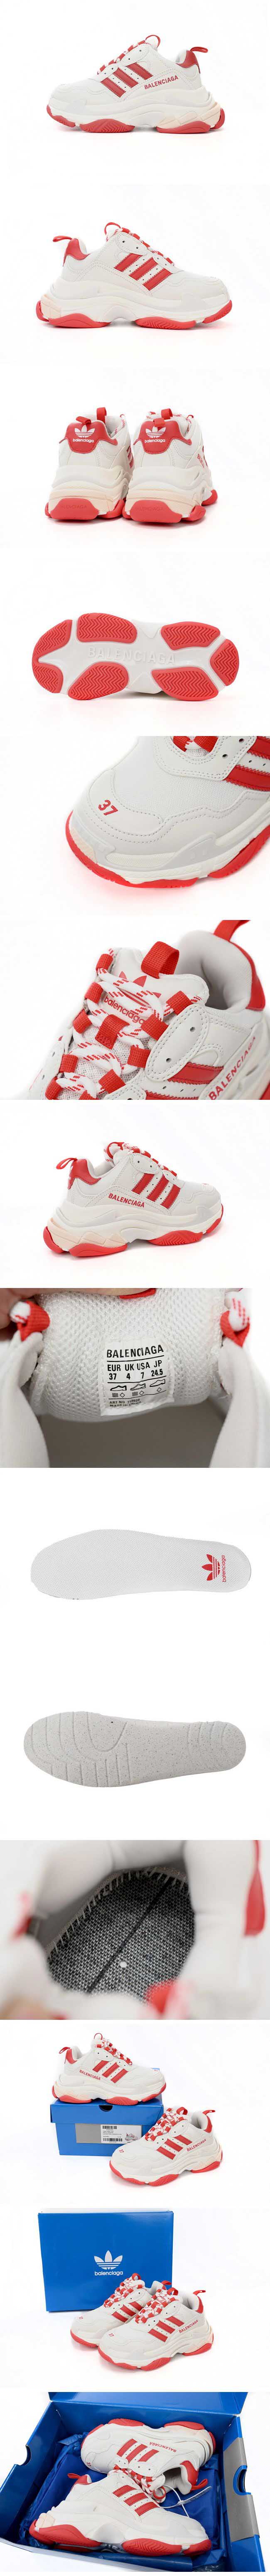 Adidas x Balenciaga Triple S White/Red アディダス x バレンシアガ トリプルエス ホワイト/レッド